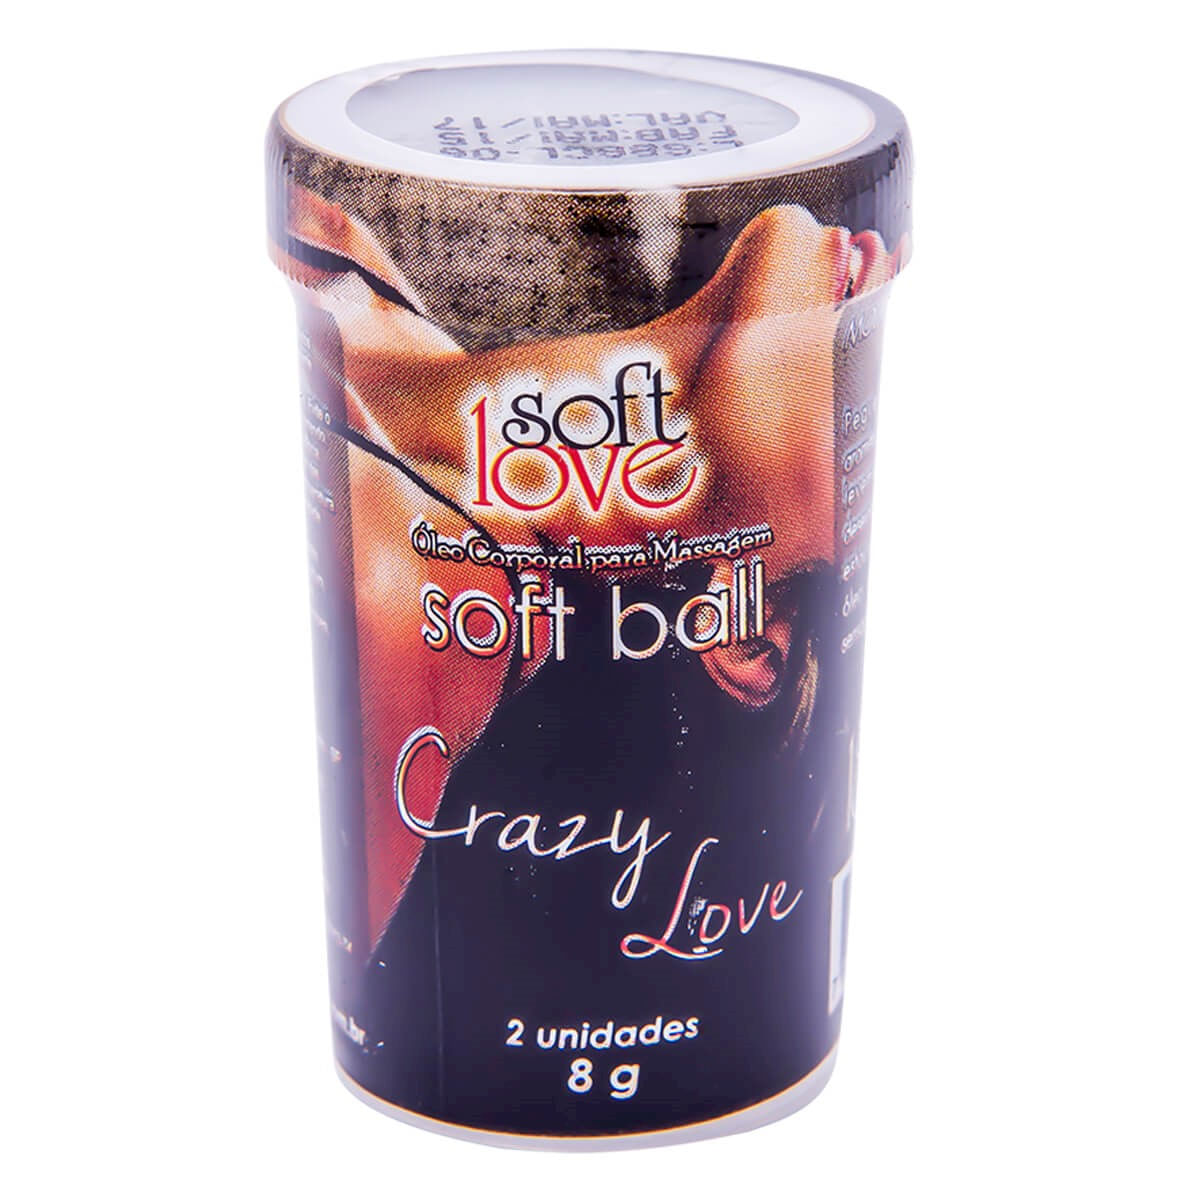 Soft Ball Crazy Love Óleo Corporal para Massagem Beijável 2 uni Soft Love